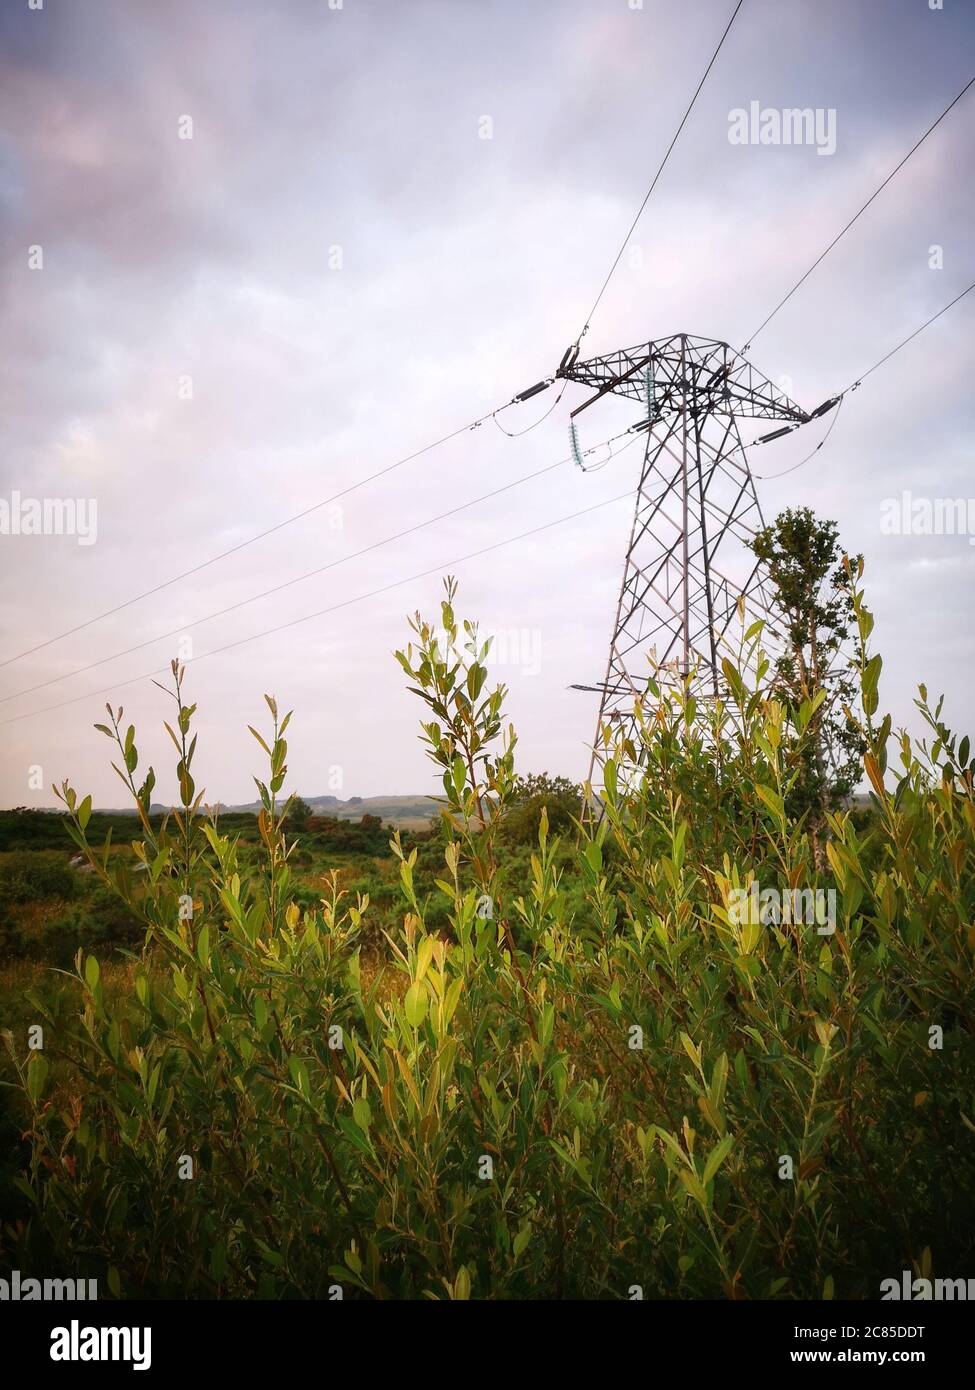 Elektrischer Turm auf dem Land, Galway, Irland, Moody Herbsttag, Vegetation im Vordergrund Stockfoto